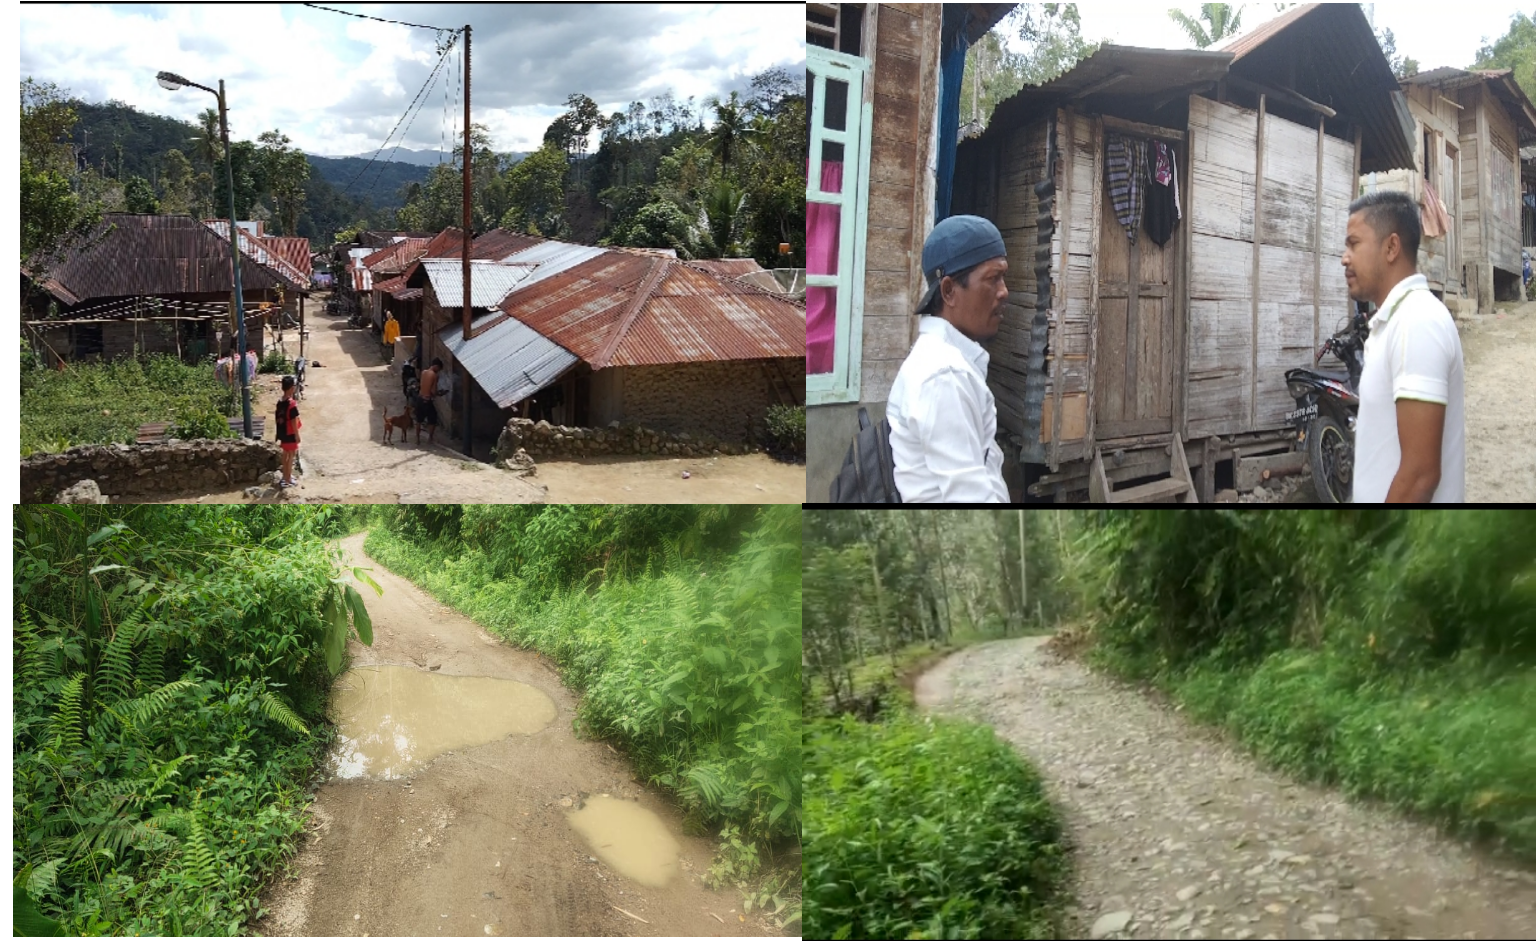 Jalan menuju Desa terpencil di Kotanopan memprihatinkan, warga Simandolam minta perhatian pemerintah, fhoto : Syahren.